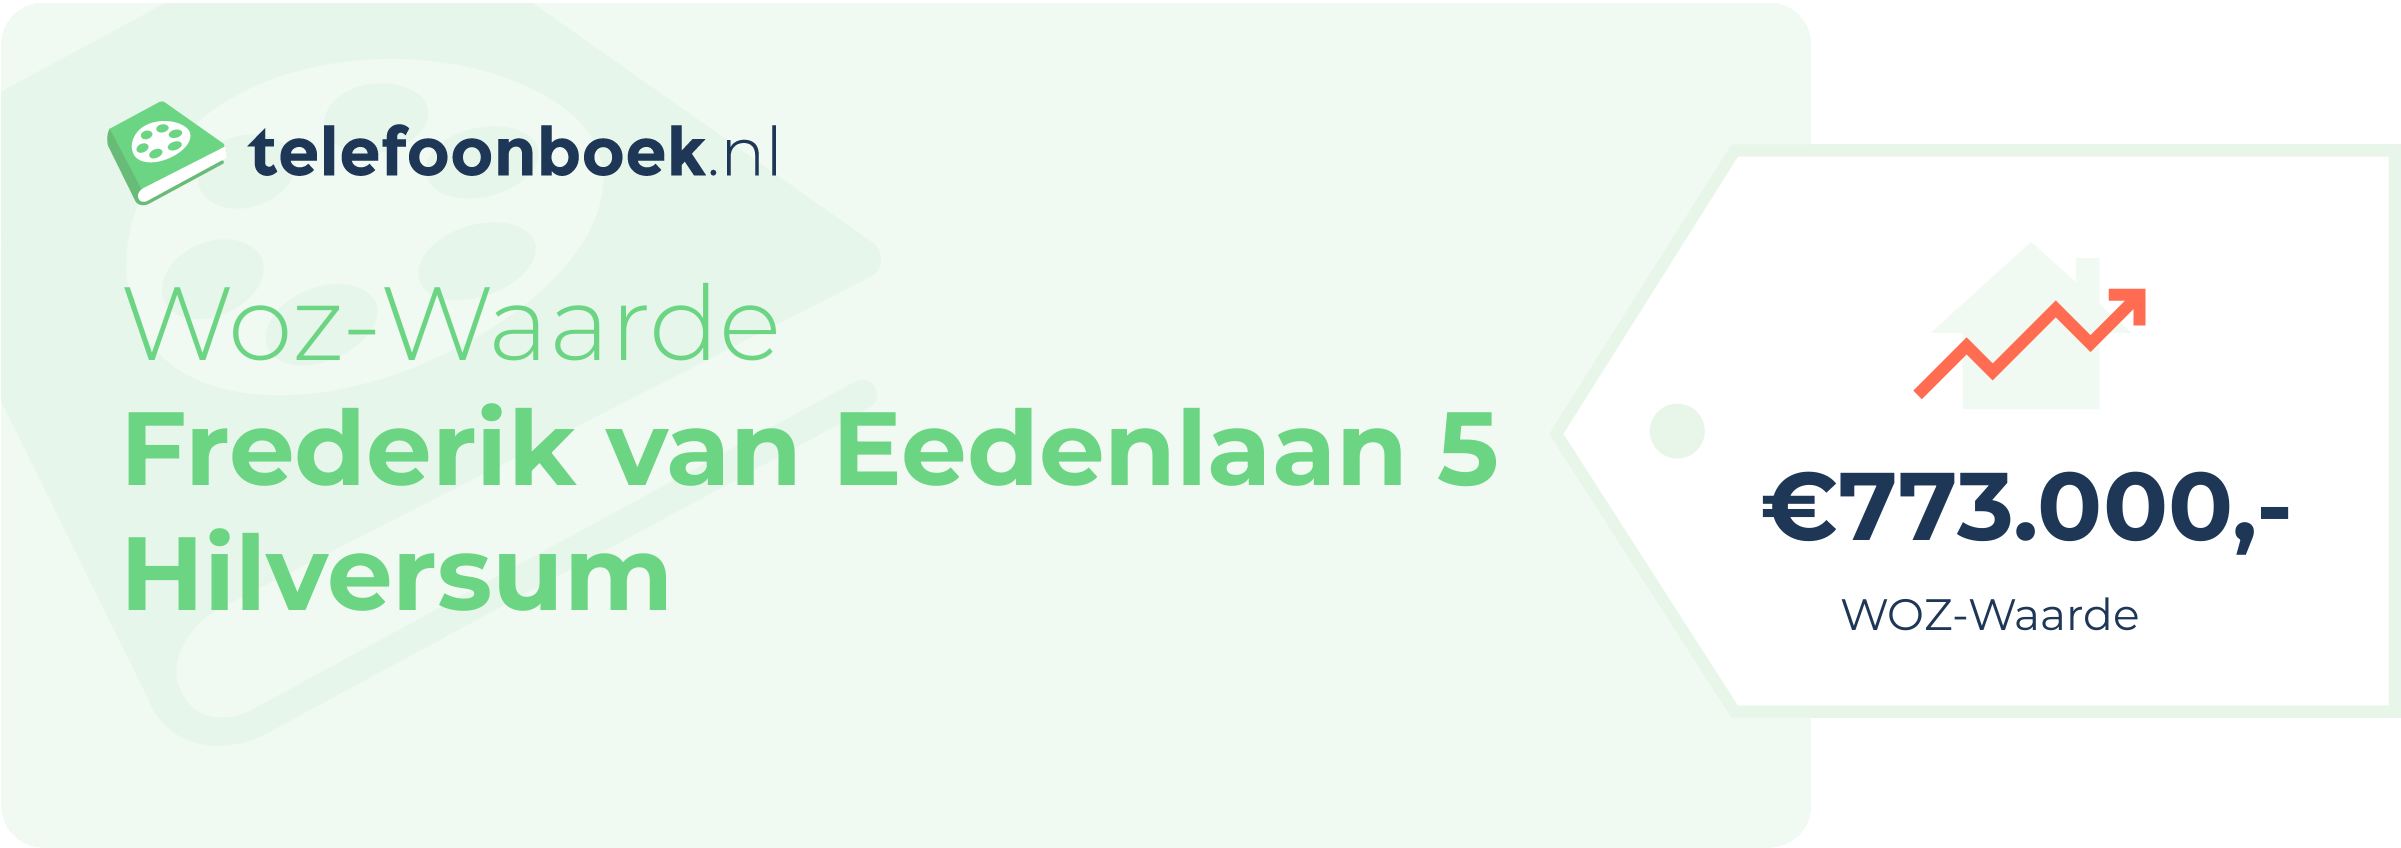 WOZ-waarde Frederik Van Eedenlaan 5 Hilversum